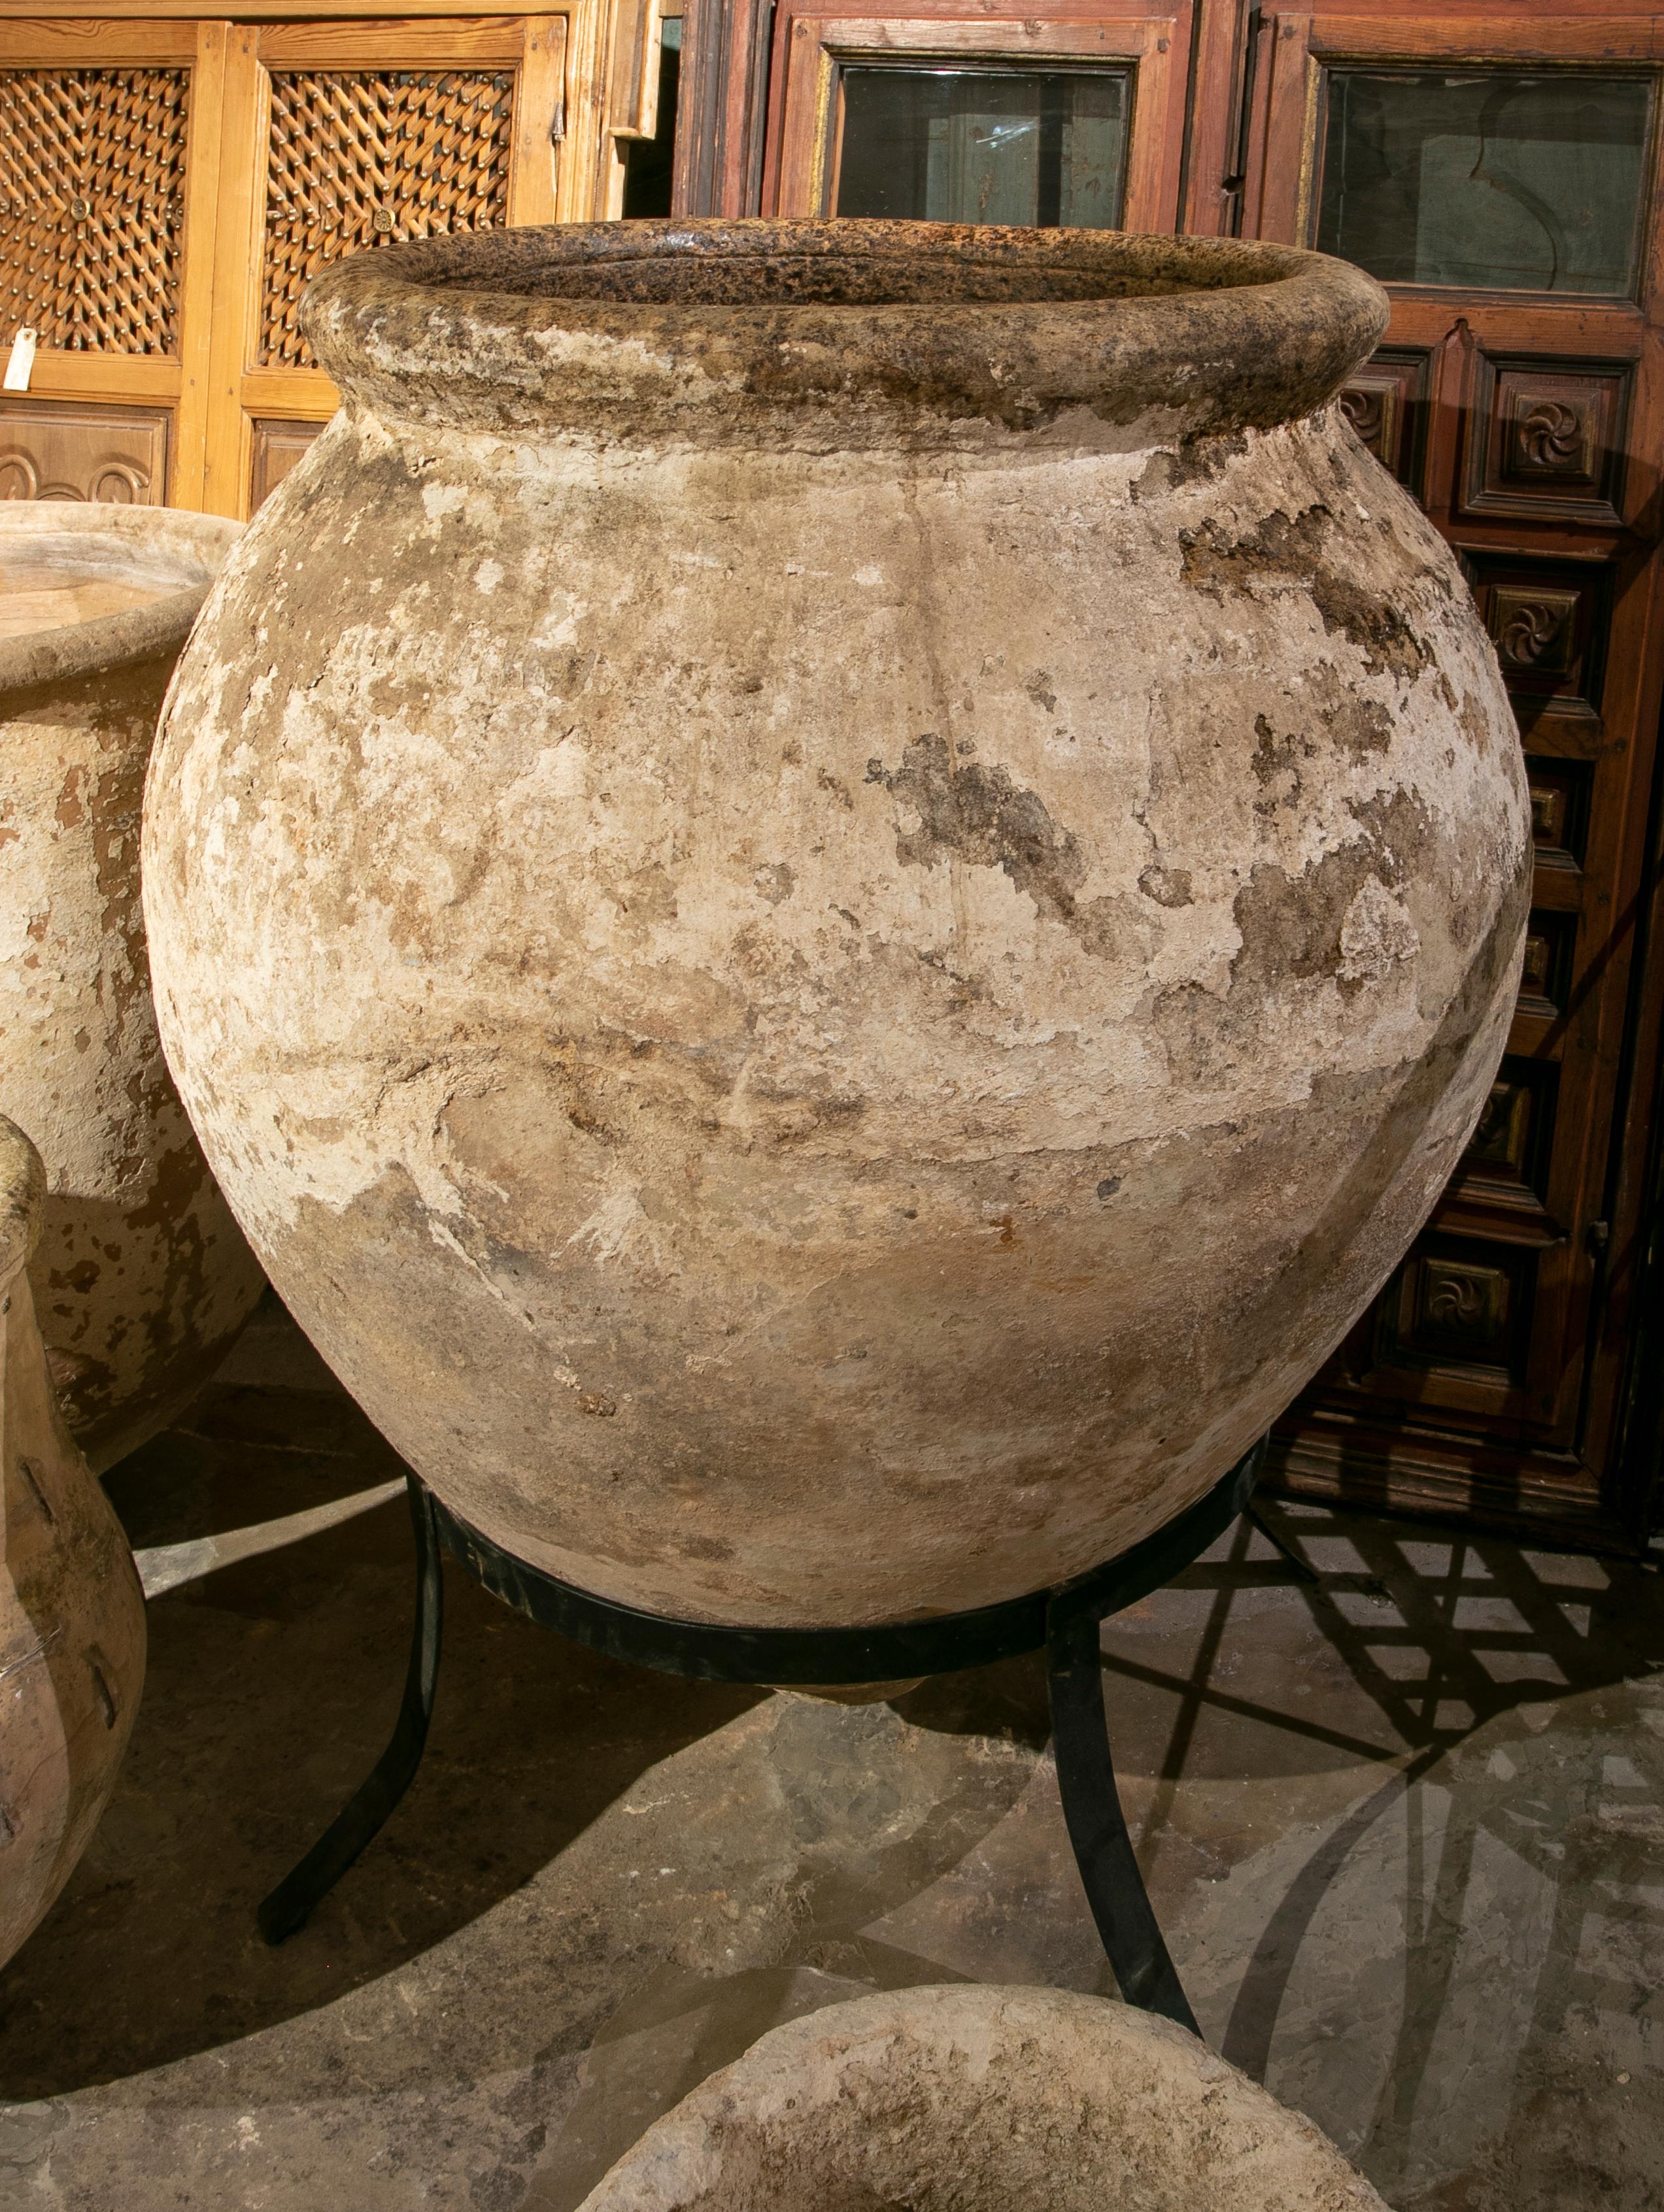 19th Century Spanish whitewashed ceramic large jar.